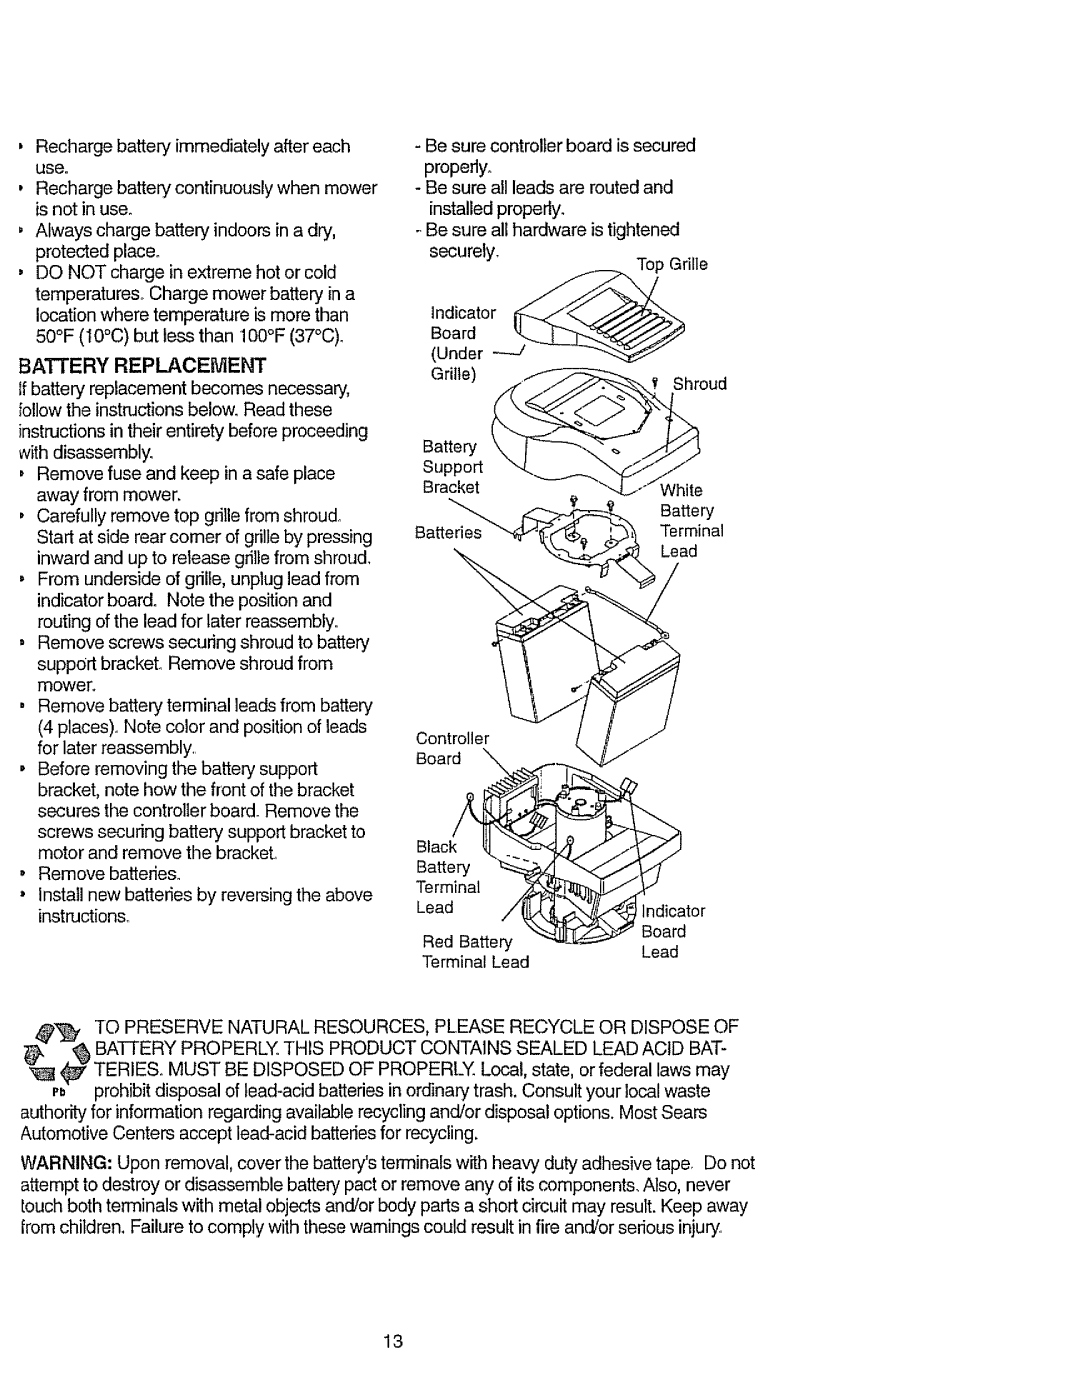 Craftsman 917.386411 manual Alwayschargebatteryindoorsinadry protectedplace, Batteryreplacement 